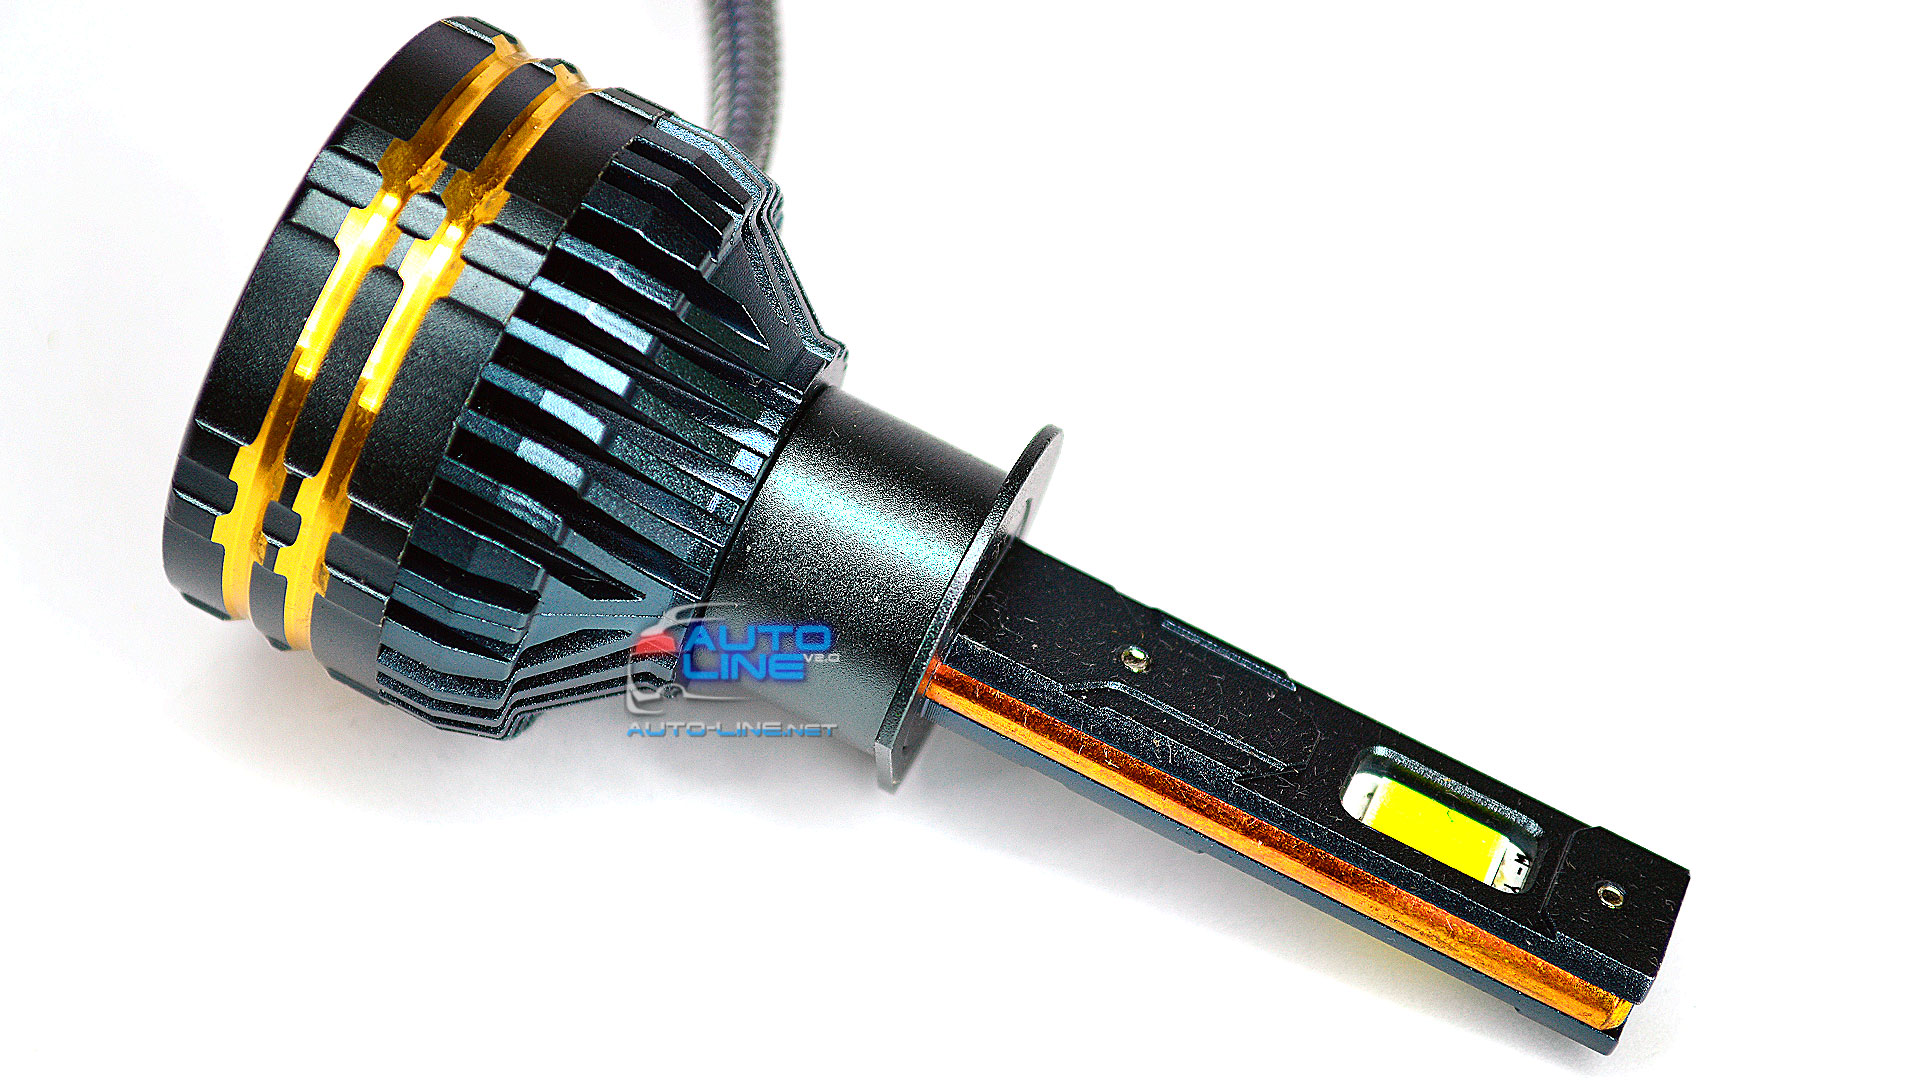 B-Power H1 LED N3C V1 130W 20000Lm 3000K/4300K/6000K - трехцветные LED-лампы H1 3000K/4300K/6000K с медными трубками